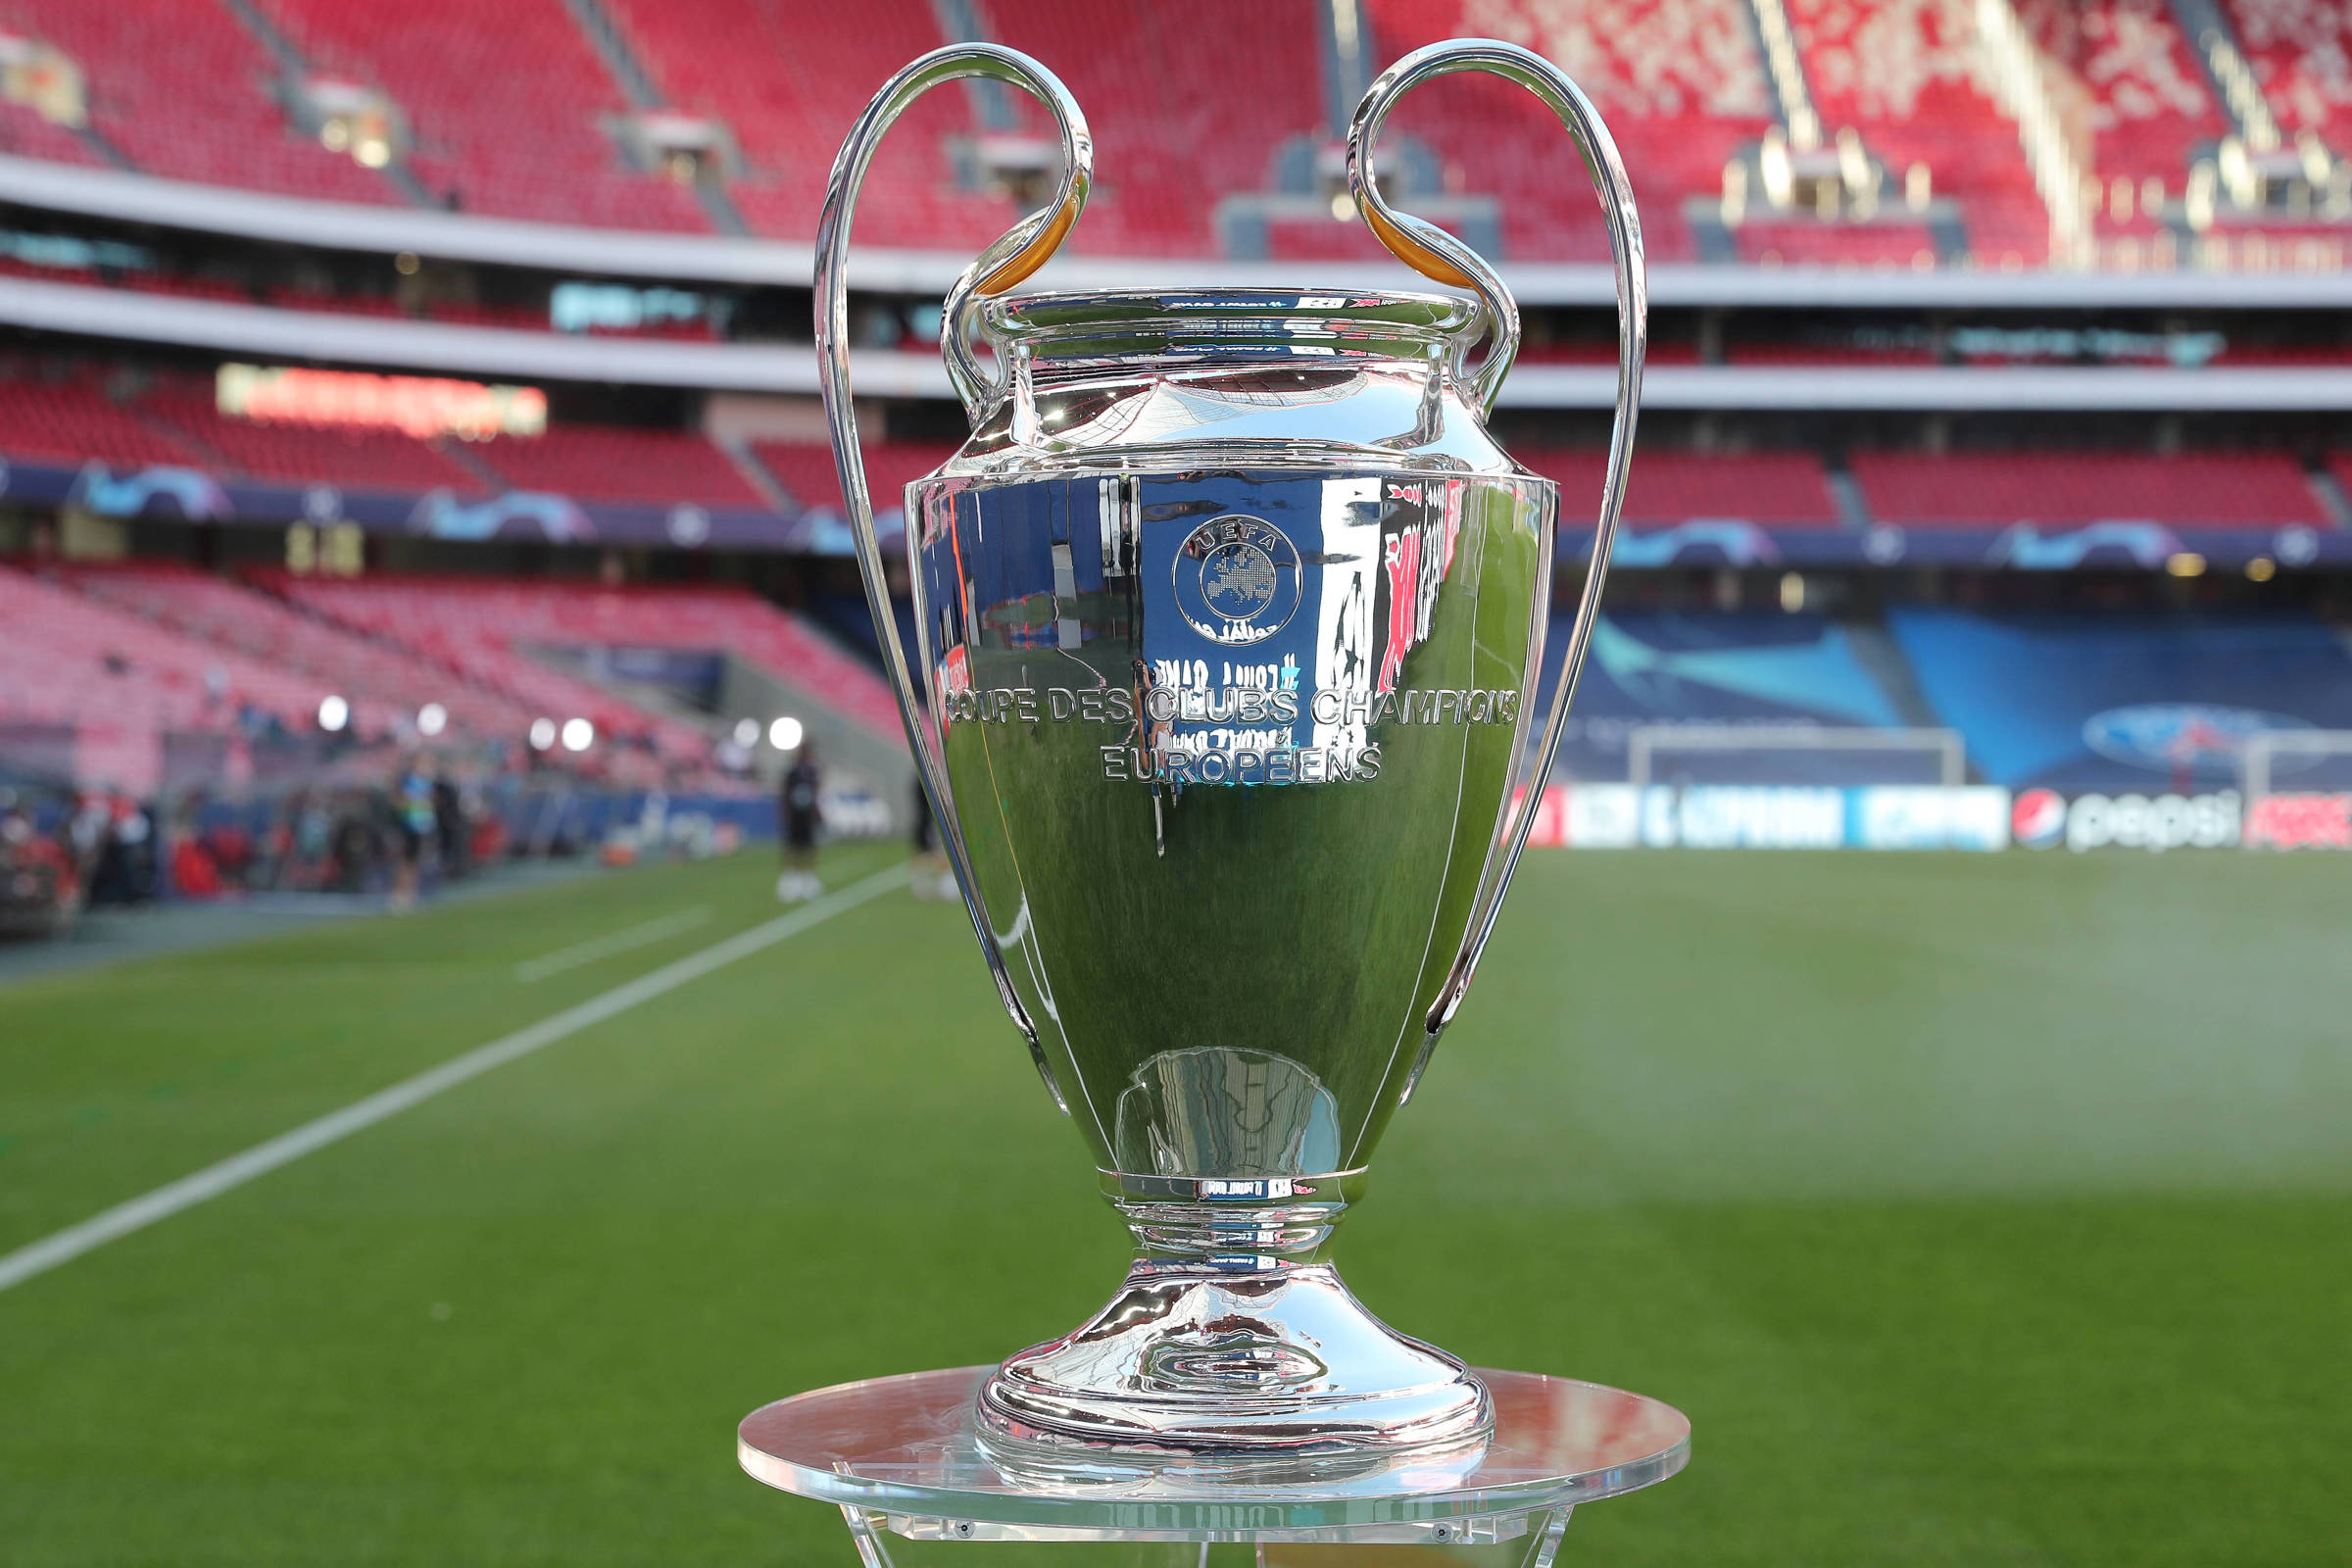 Champions inicia oitavas com os favoritos Barcelona, PSG e Liverpool na  berlinda - Esporte - Extra Online